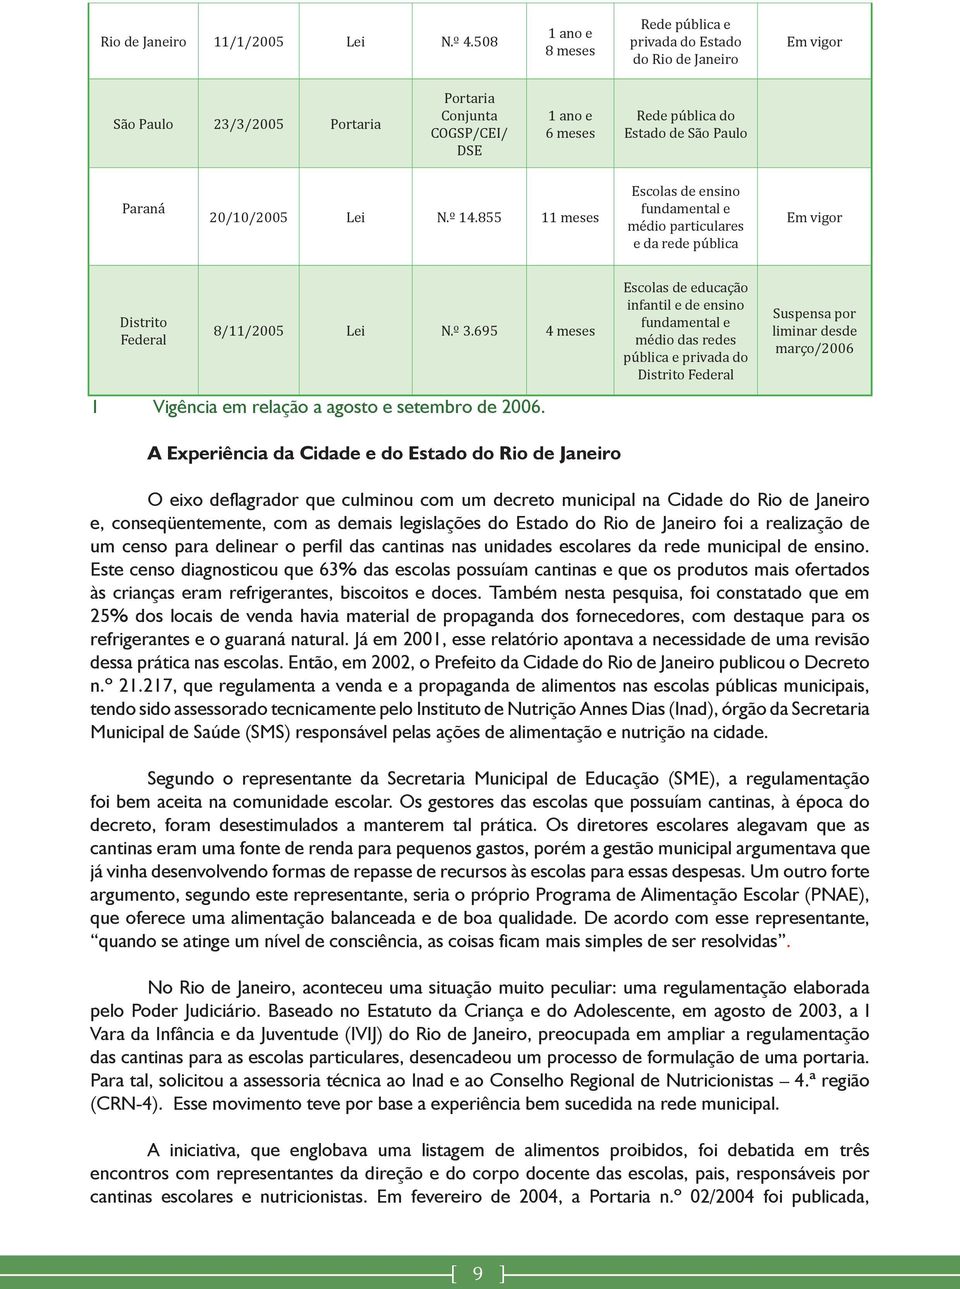 Paraná 20/10/2005 Lei N.º 14.855 11 meses Escolas de ensino fundamental e médio particulares e da rede pública Em vigor Distrito Federal 8/11/2005 Lei N.º 3.